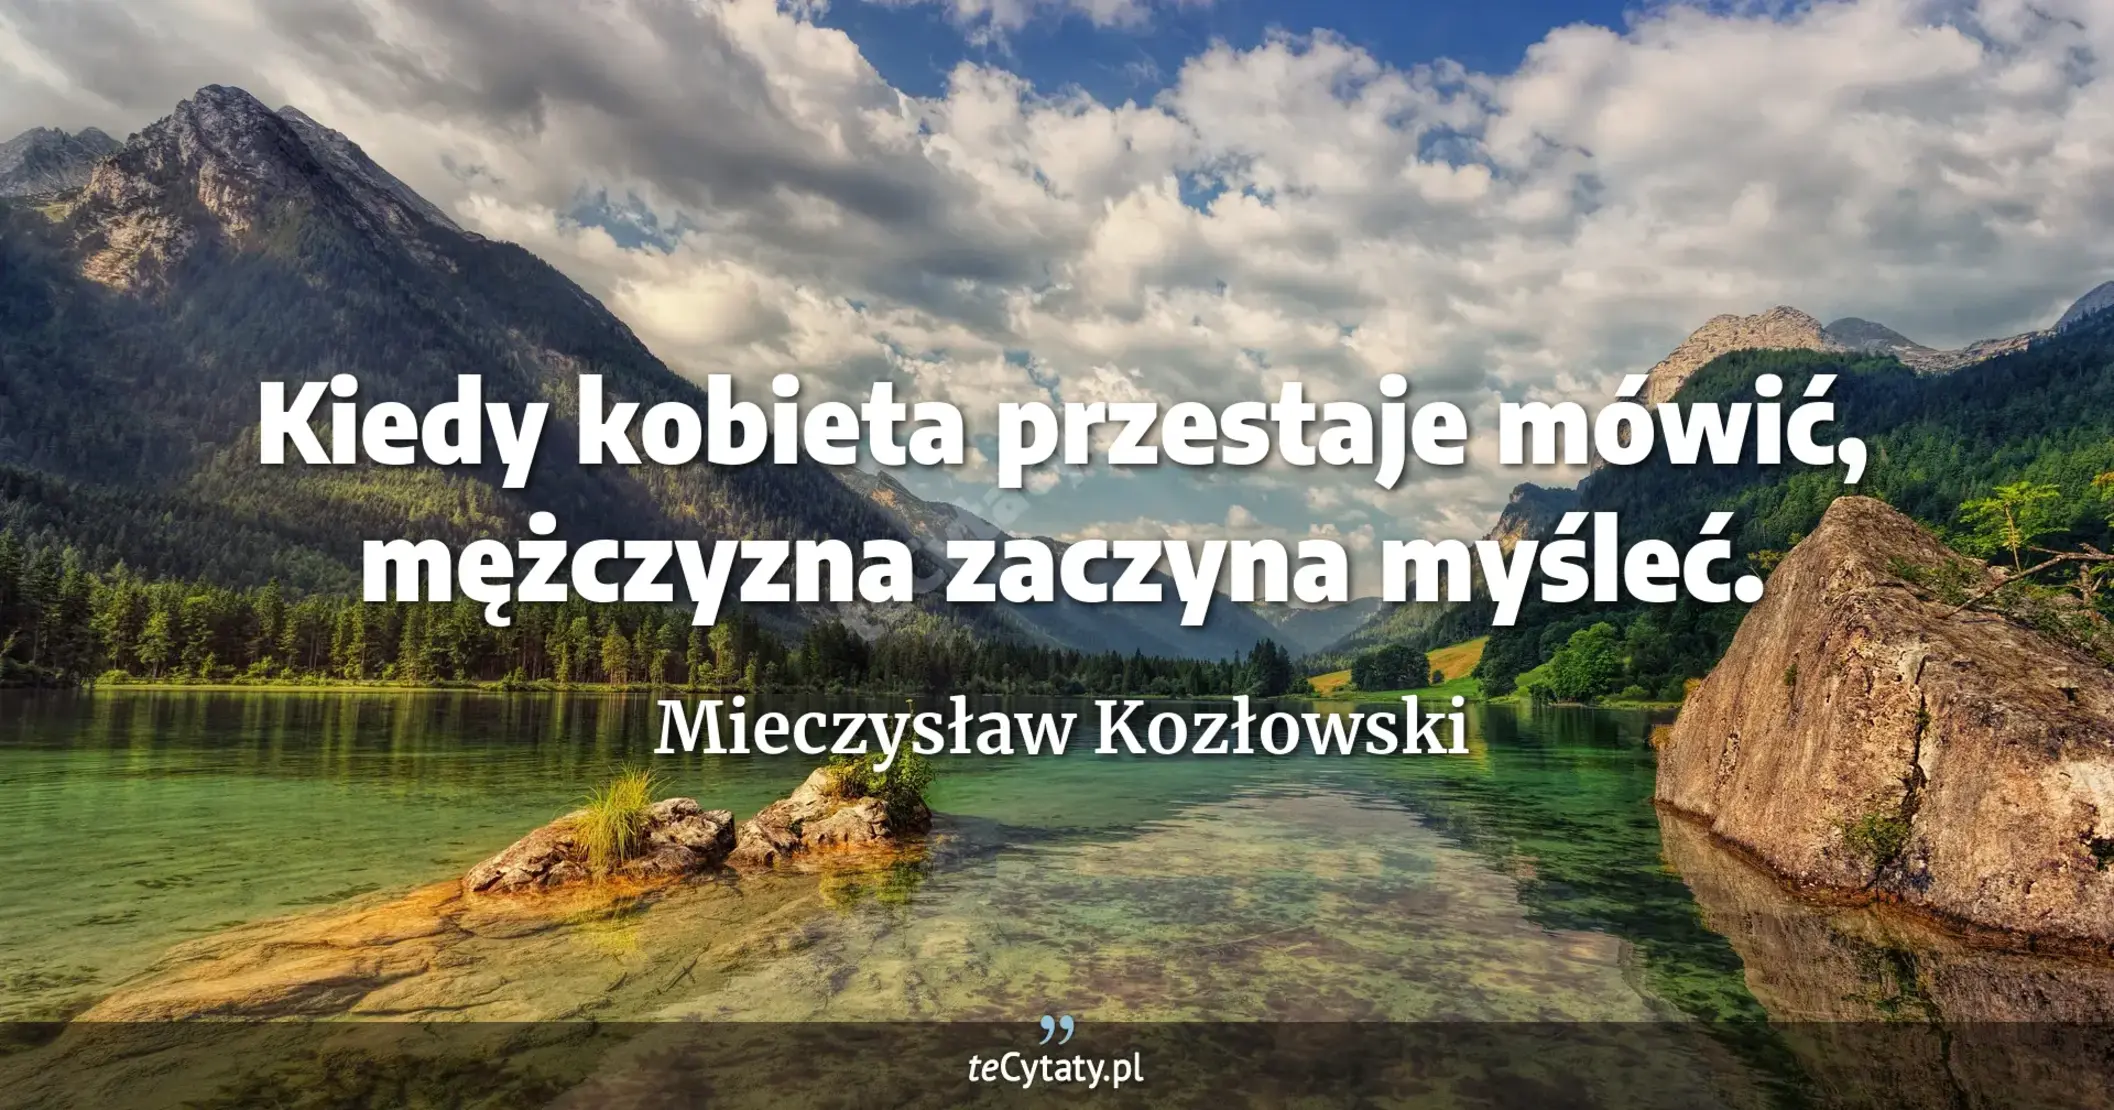 Kiedy kobieta przestaje mówić, mężczyzna zaczyna myśleć. - Mieczysław Kozłowski